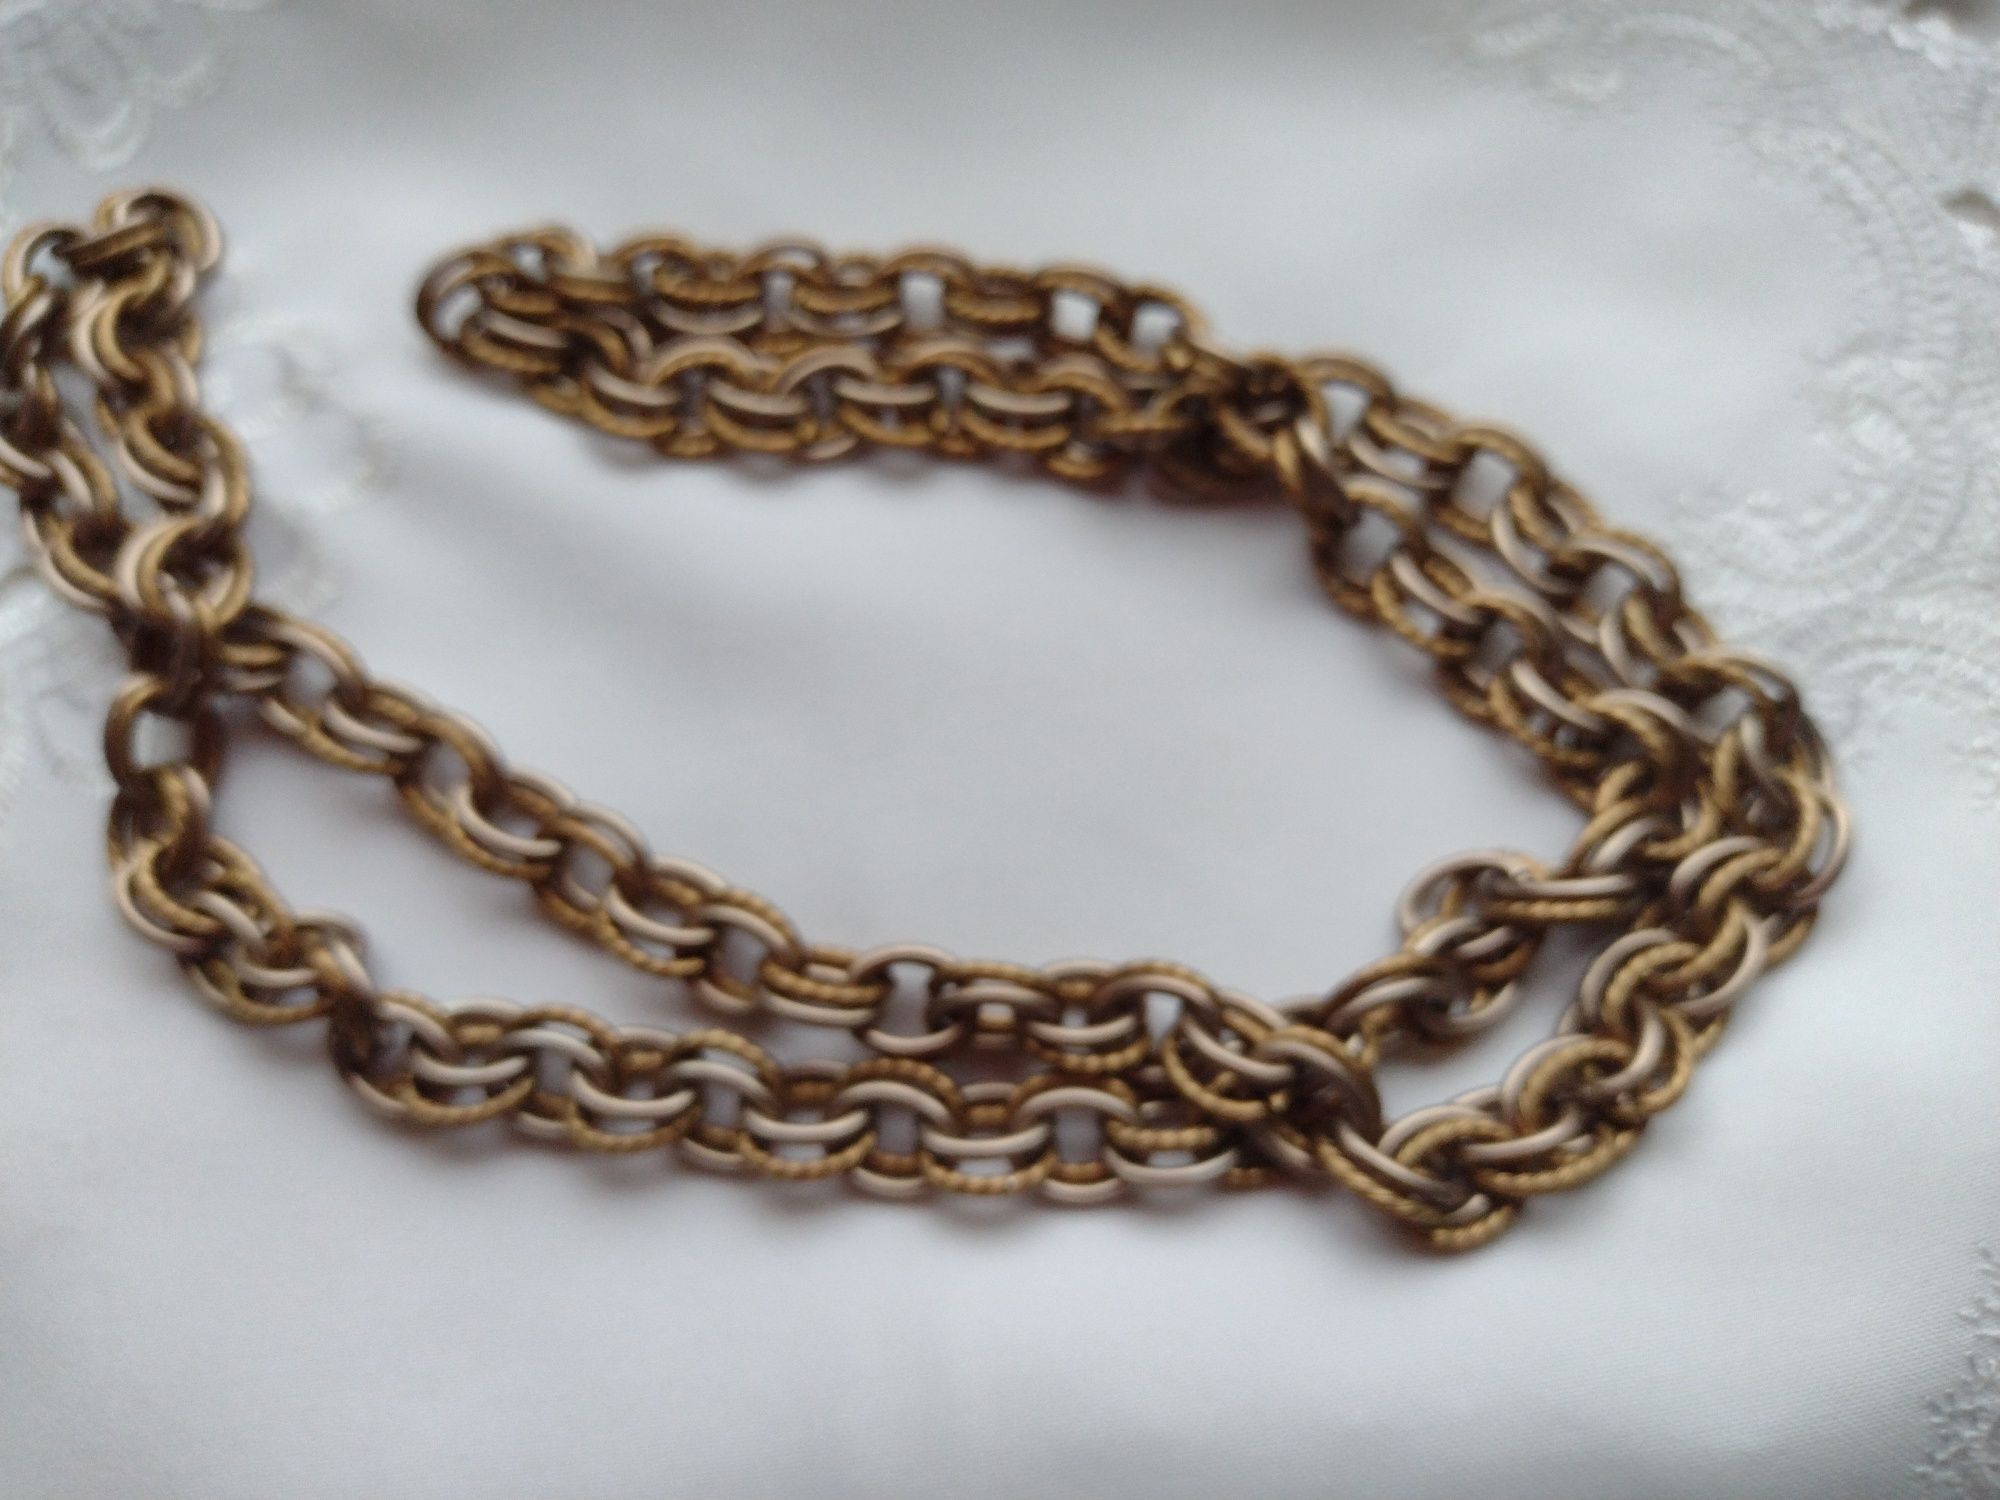 łańcuch naszyjnik 1m damski męski odcienie brązu starego złota